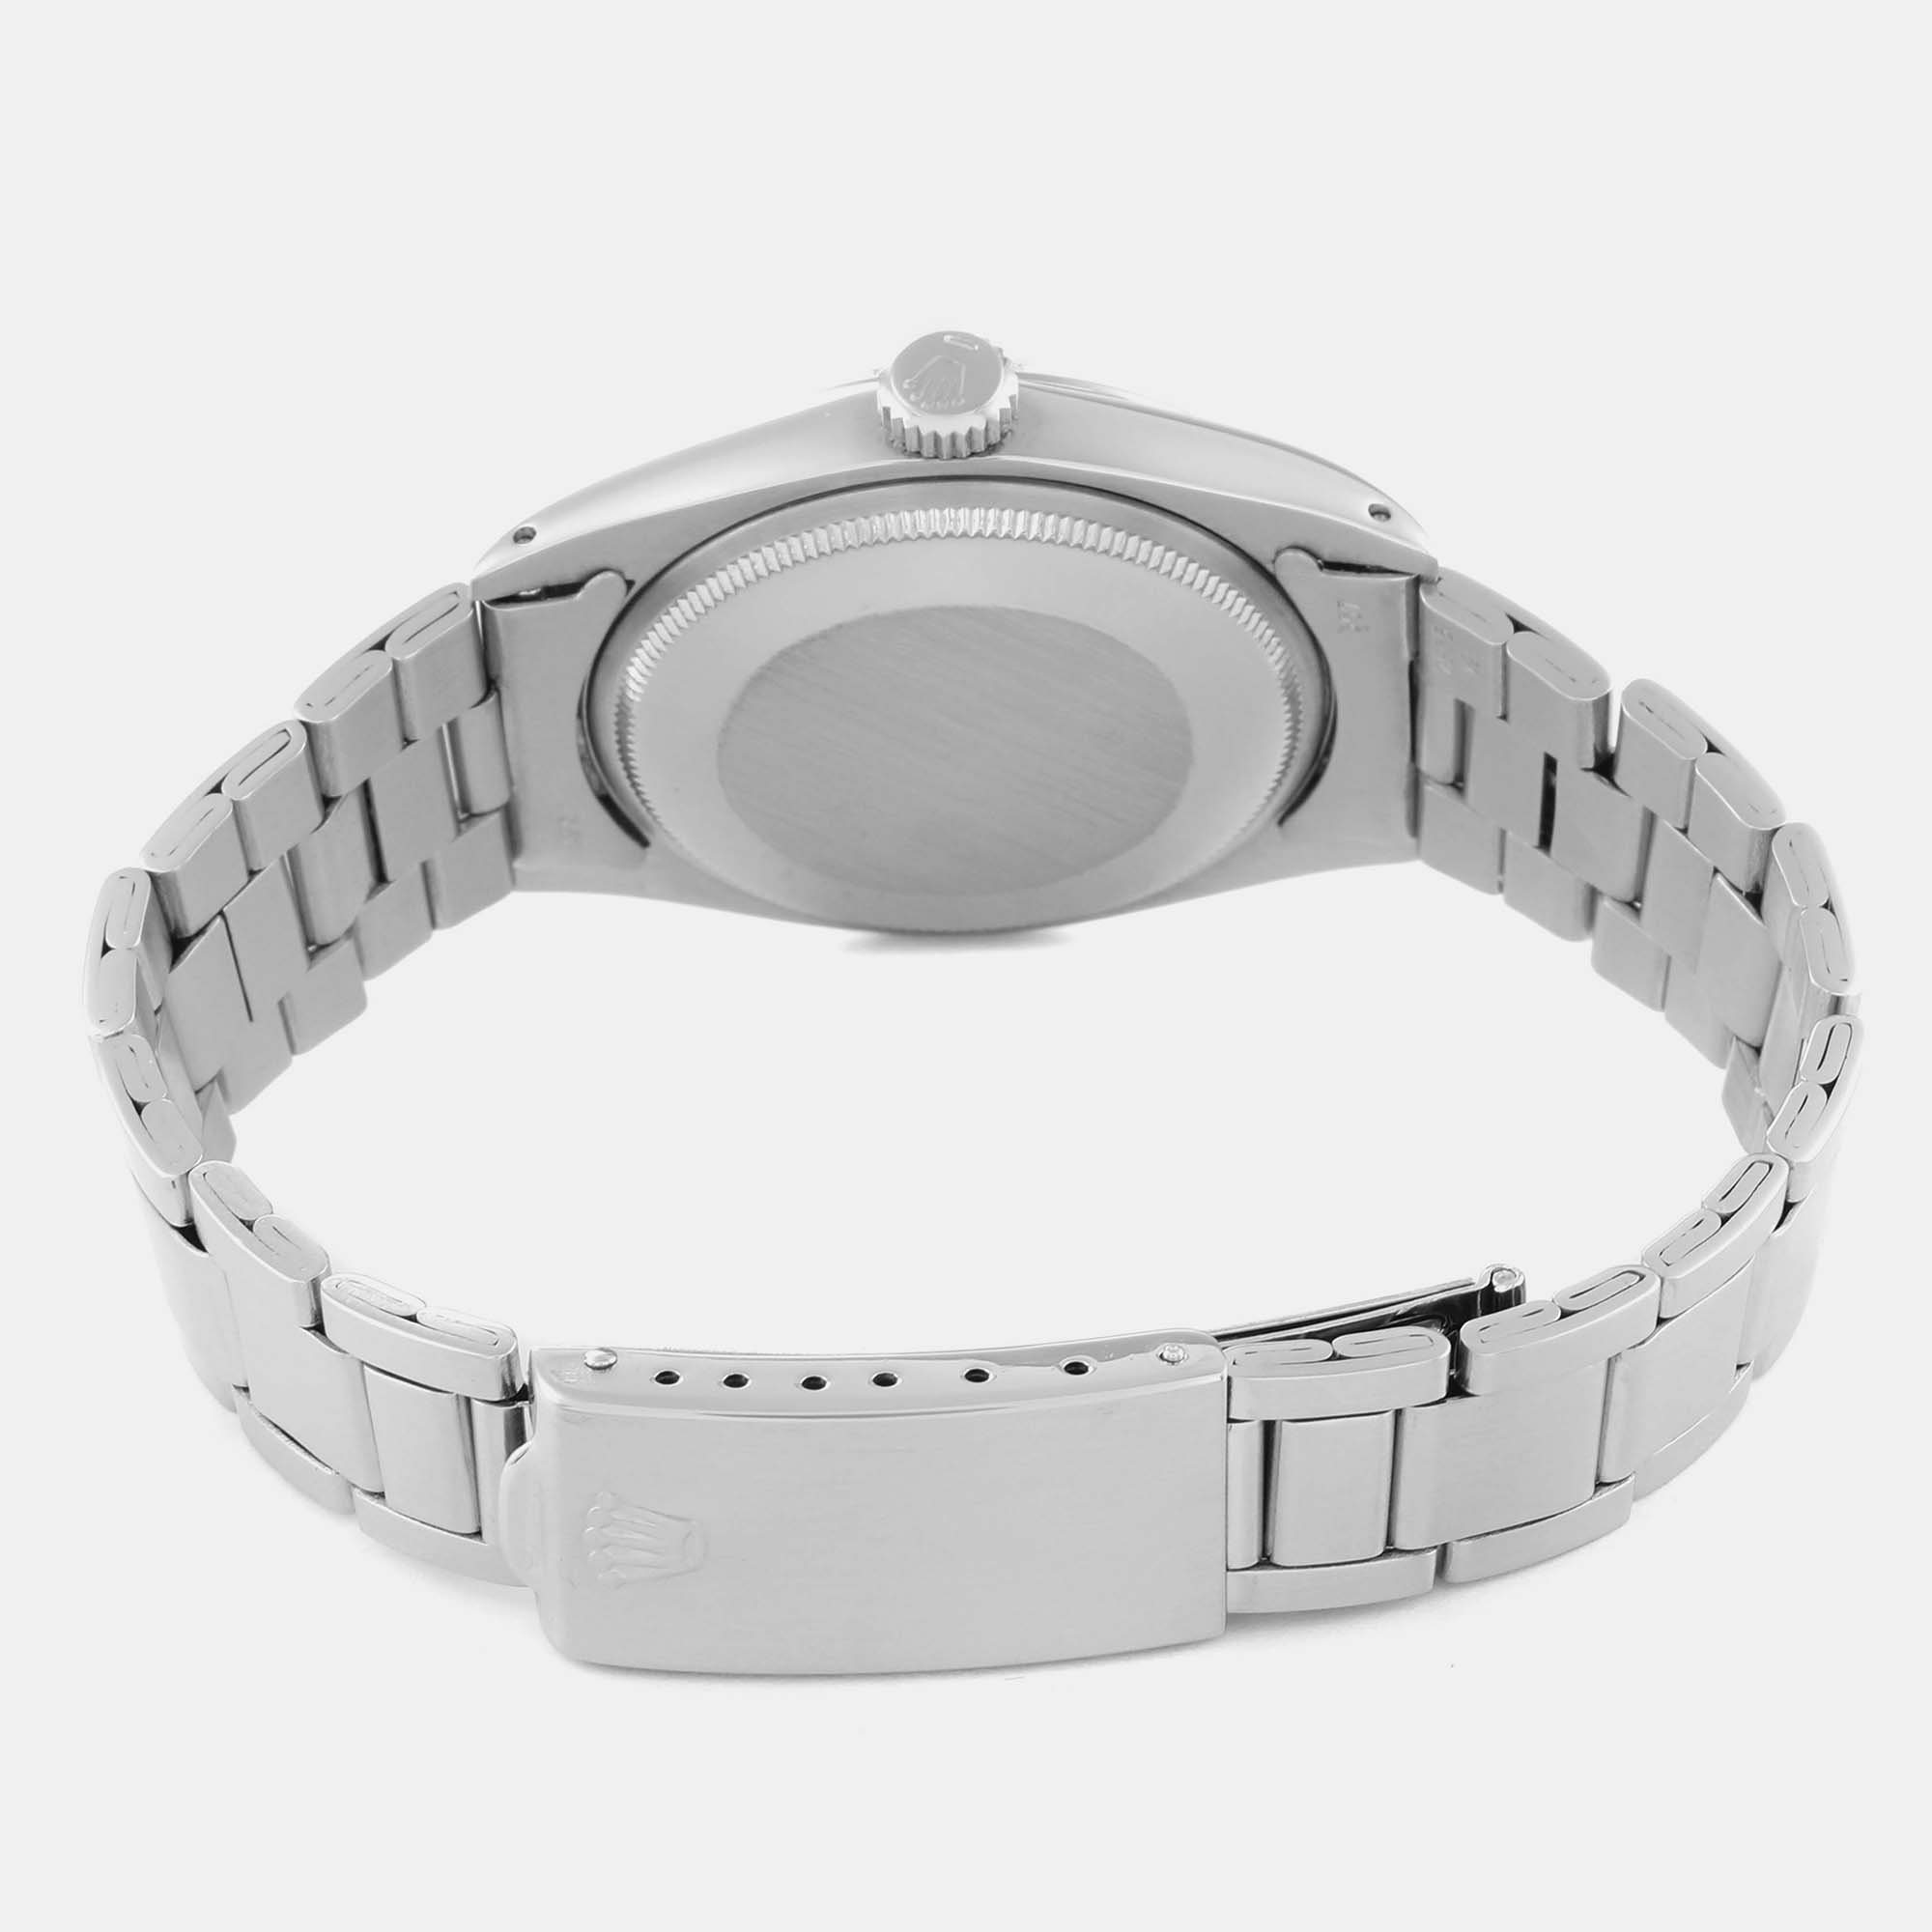 Rolex Date Grey Dial Vintage Steel Men's Watch 1500 34 Mm